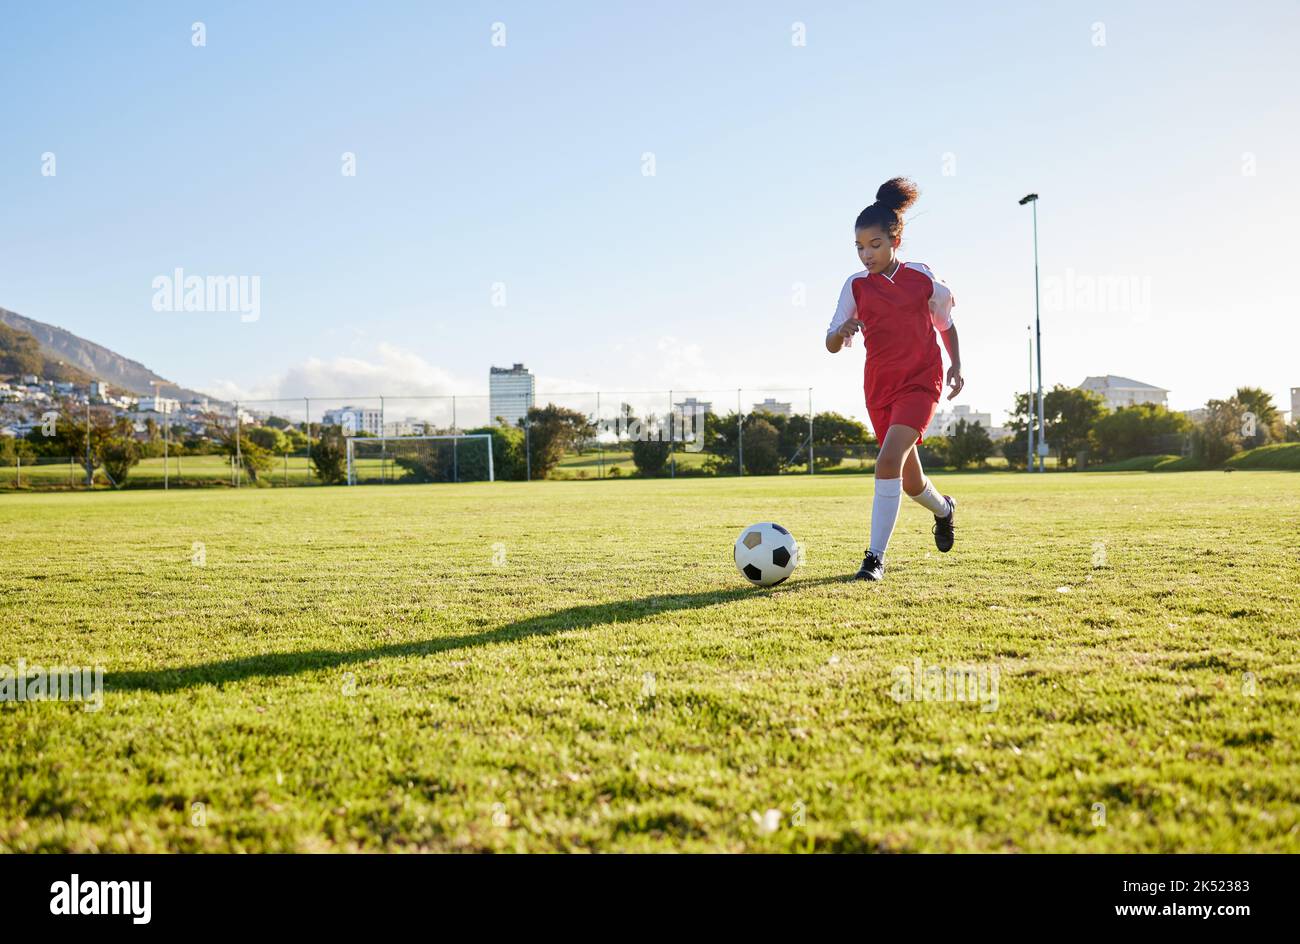 Jeune fille qui court sur gazon, forme de football pour donner un coup de pied au football et énergie d'entraînement des jeunes enfants au Brésil. Enfant en bonne santé, exercice futur de l'athlète Banque D'Images